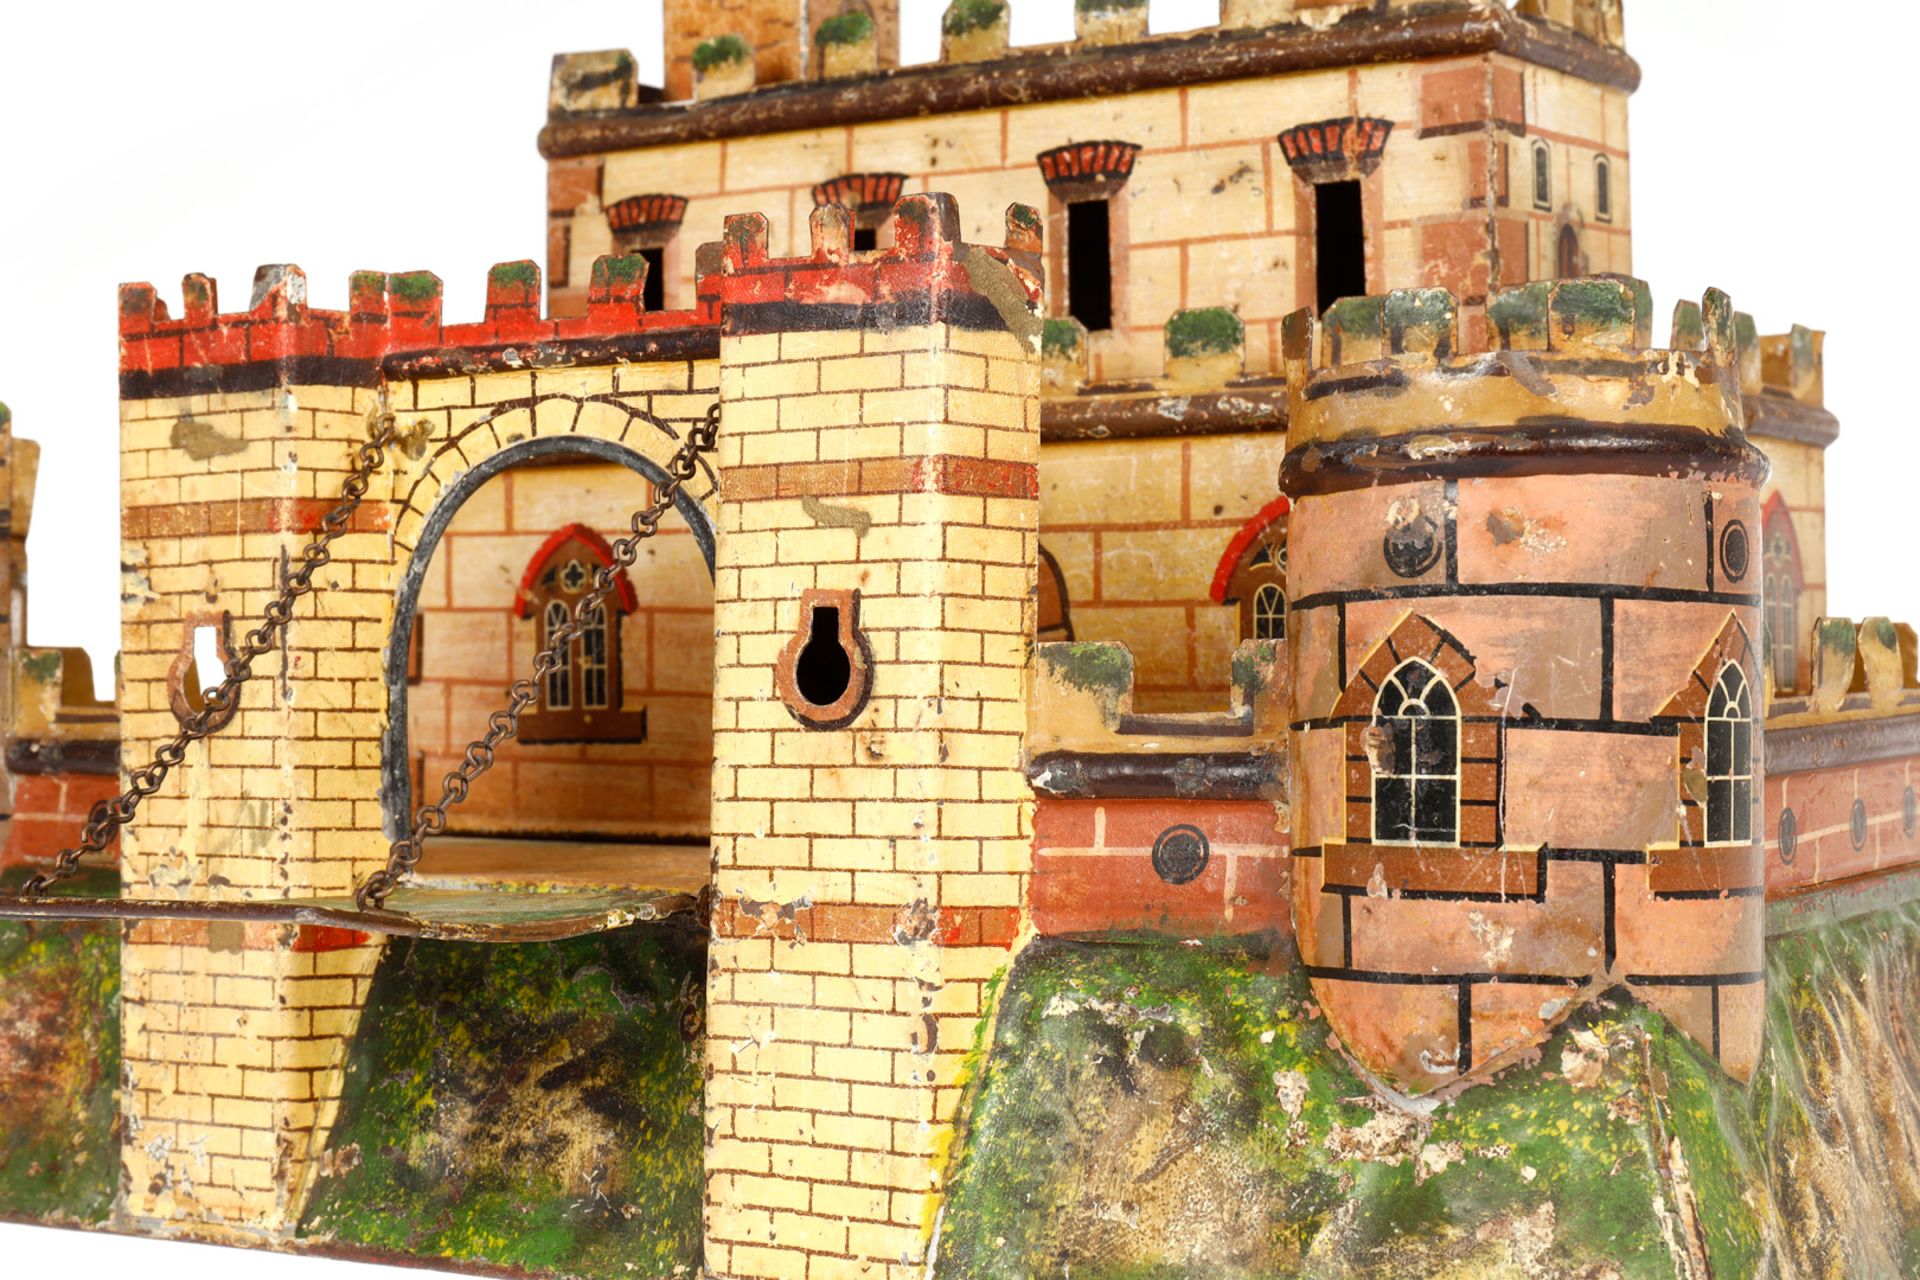 Märklin Festung 8131, uralt. Felsplateau mit Umfassungsmauer, Ecktürmen und durch Zugbrücke - Image 4 of 5